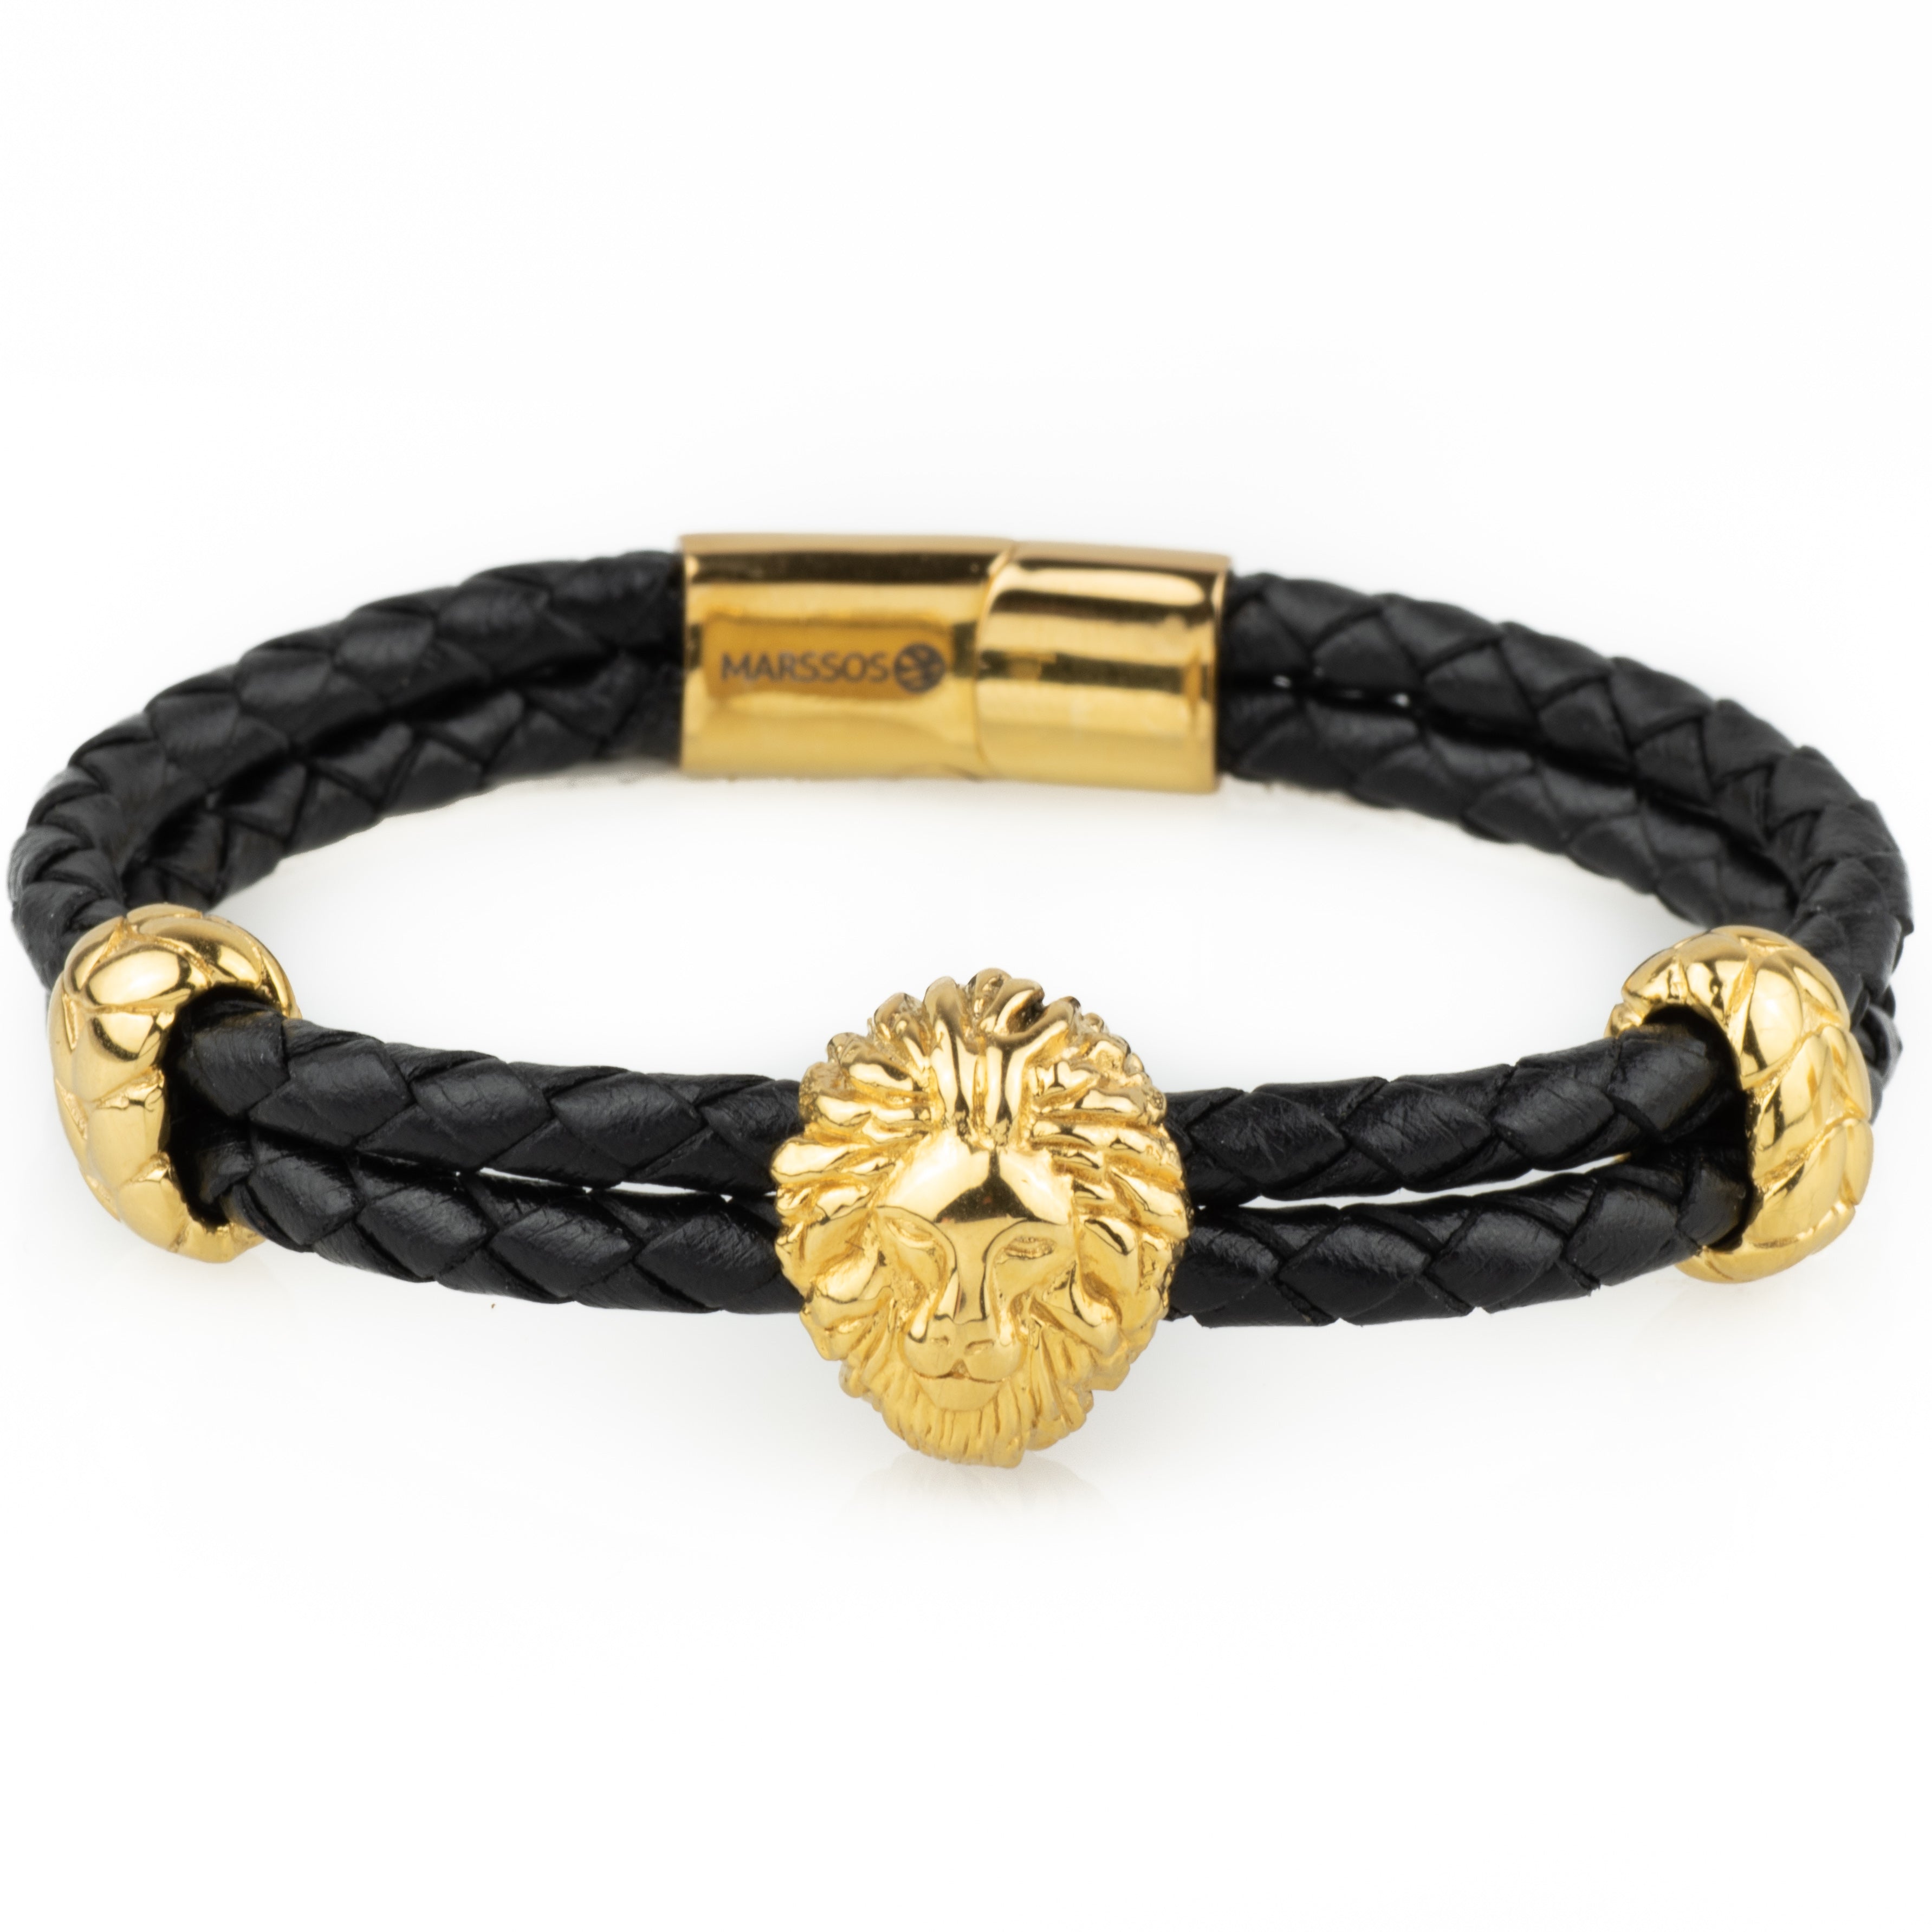 Roaring Lion Engraved Oxidised Gold Finish Men's Bracelet: Gift/Send  Jewellery Gifts Online J11125281 |IGP.com